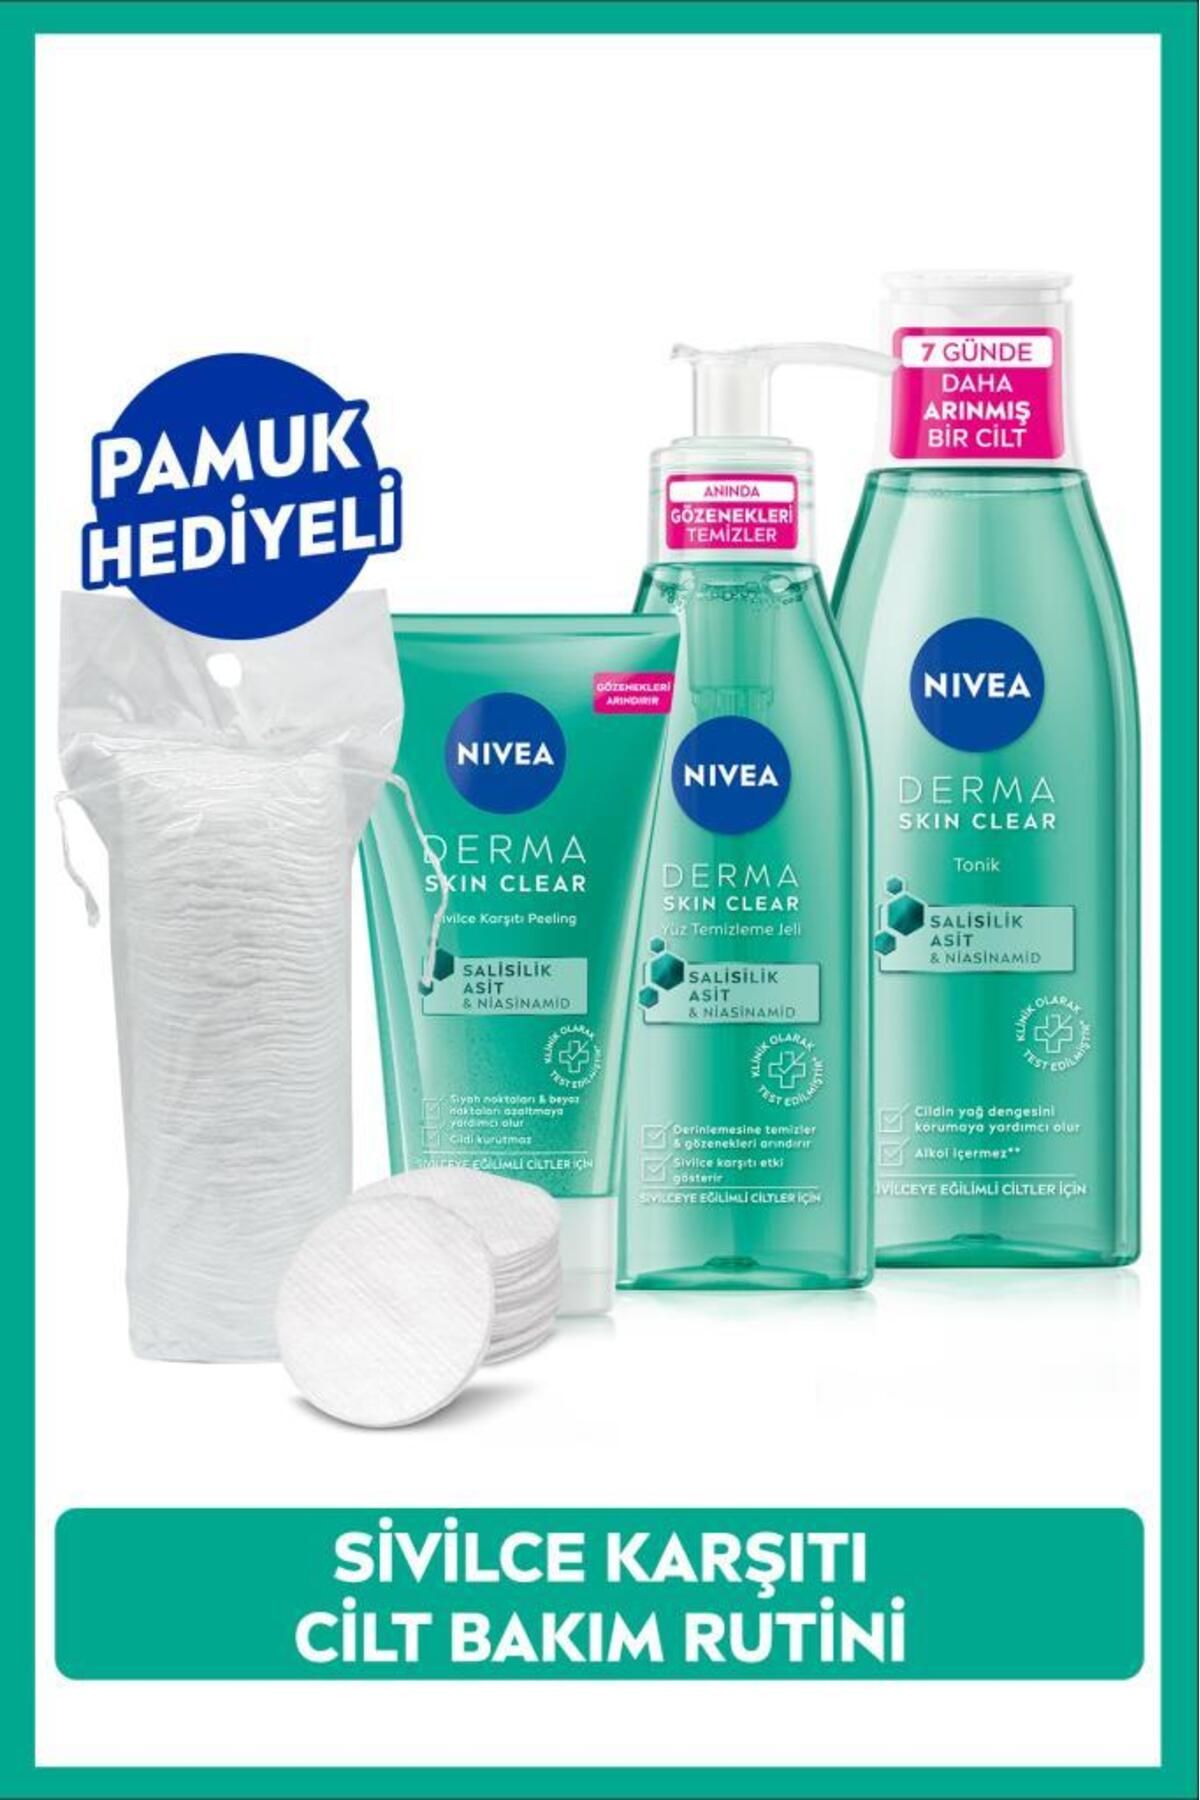 NIVEA Derma Skin Clear Niasinamid Yüz Temizleme Jeli 150ml, Tonik 200ml ve Peeling 150ml, Pamuk Hediyeli